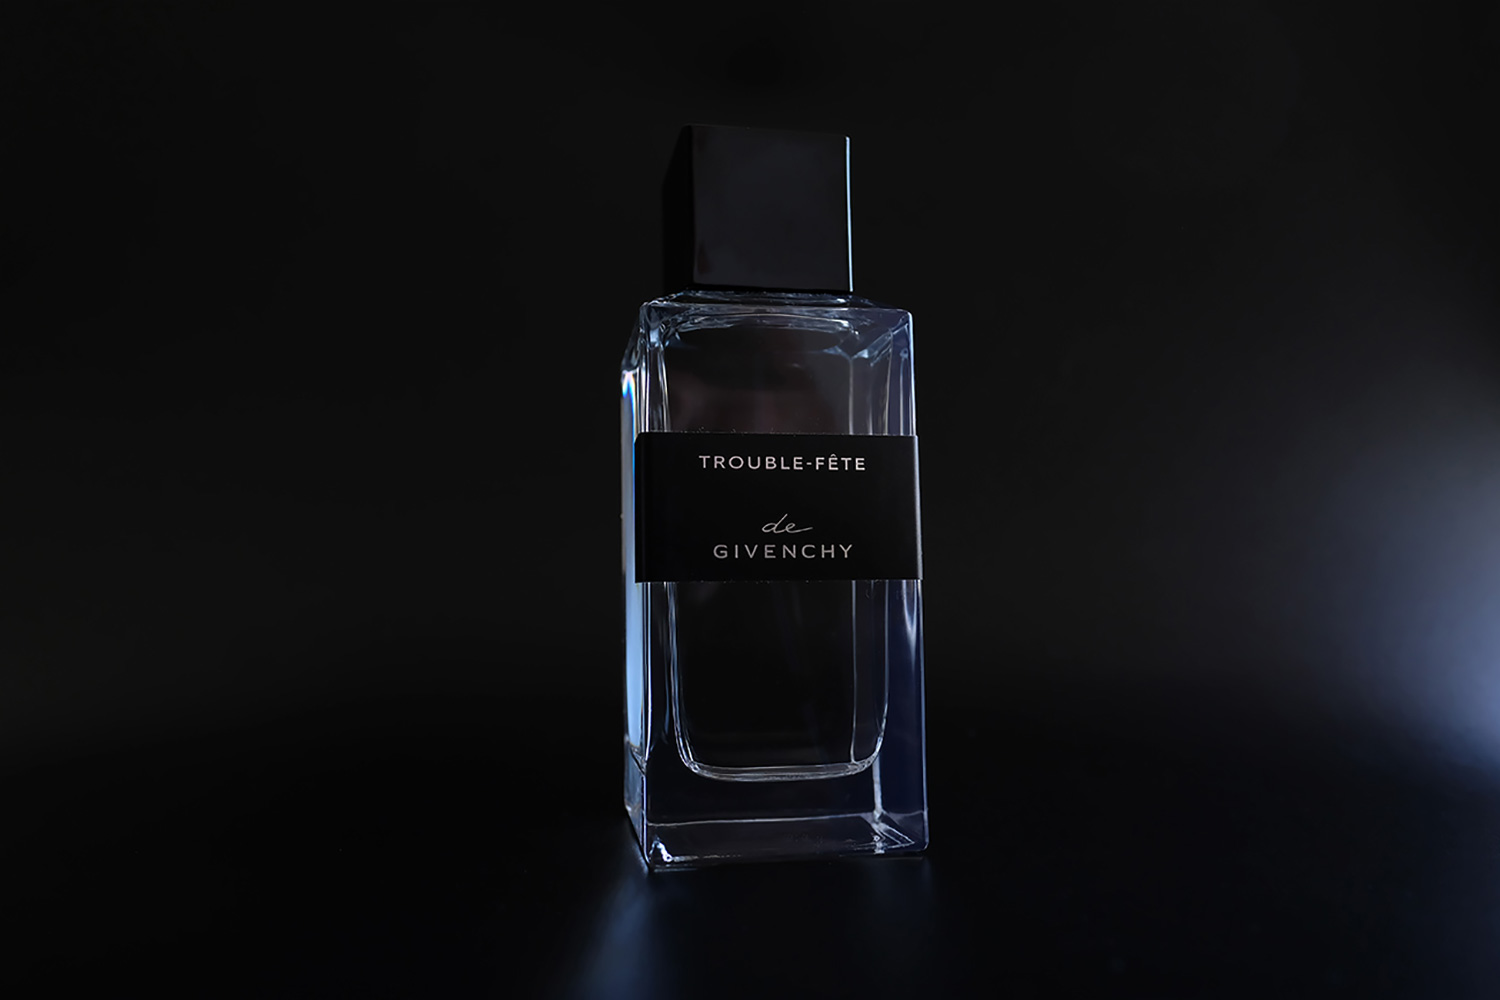 Parfum Trouble-fête de Givenchy review